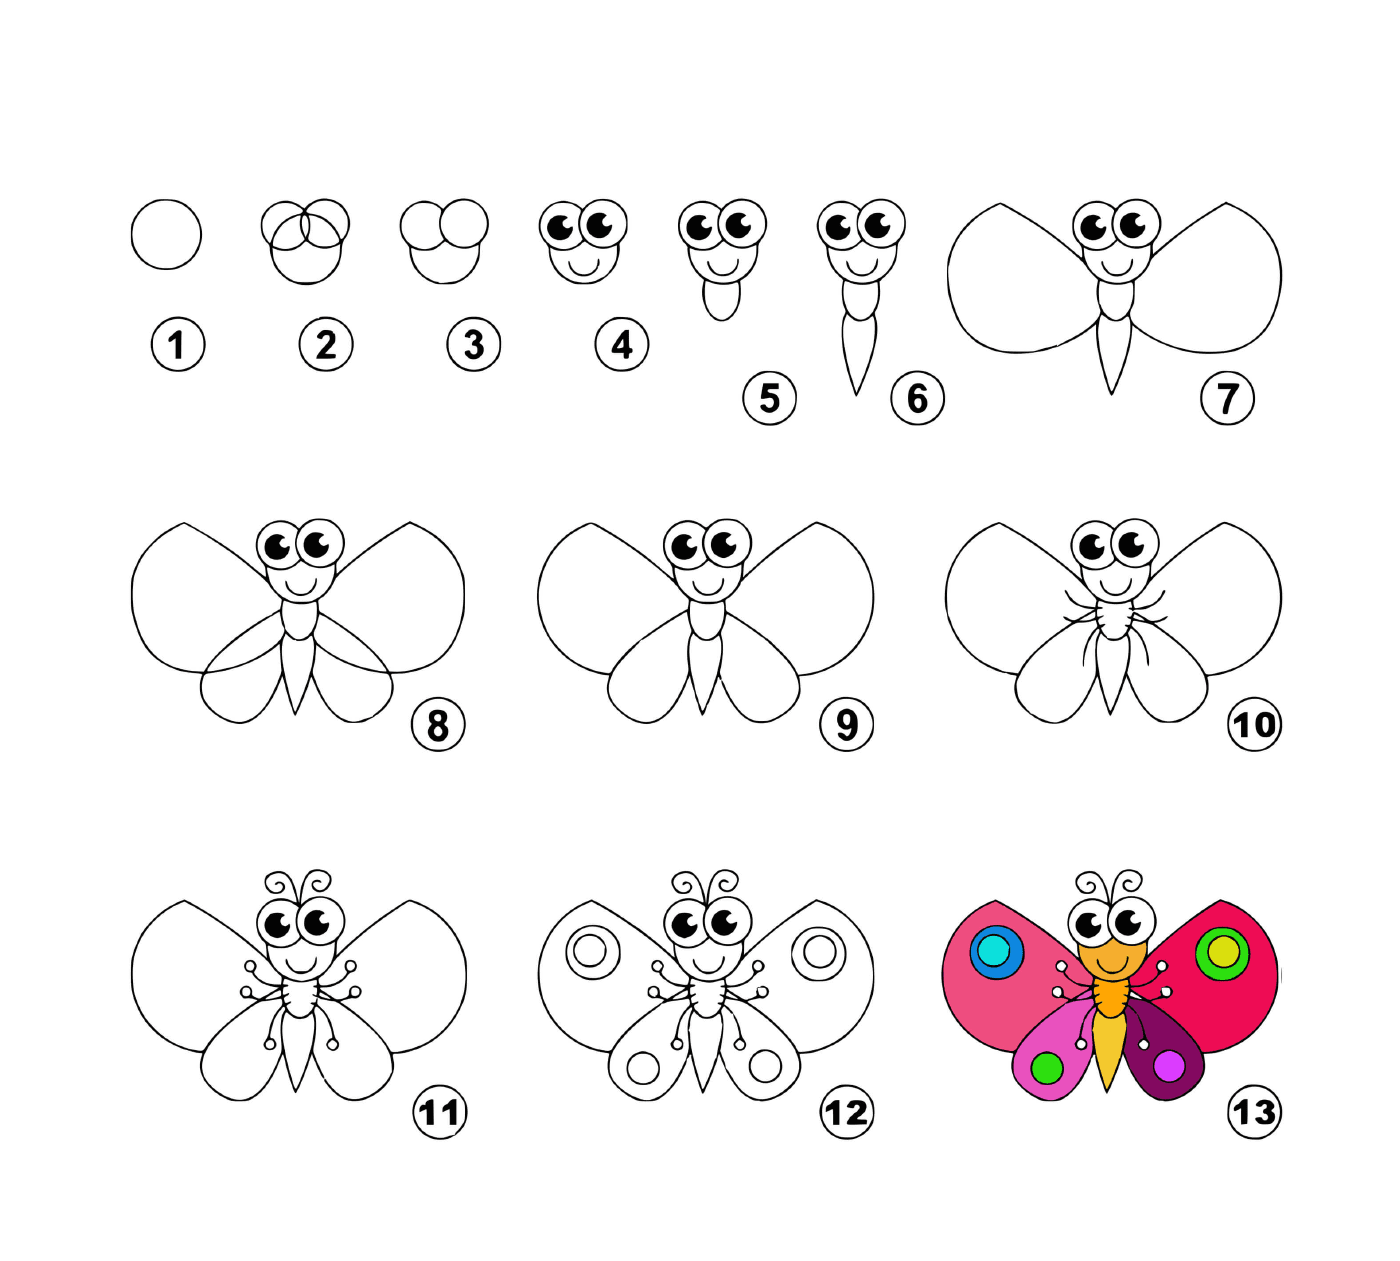  Como desenhar uma borboleta facilmente 